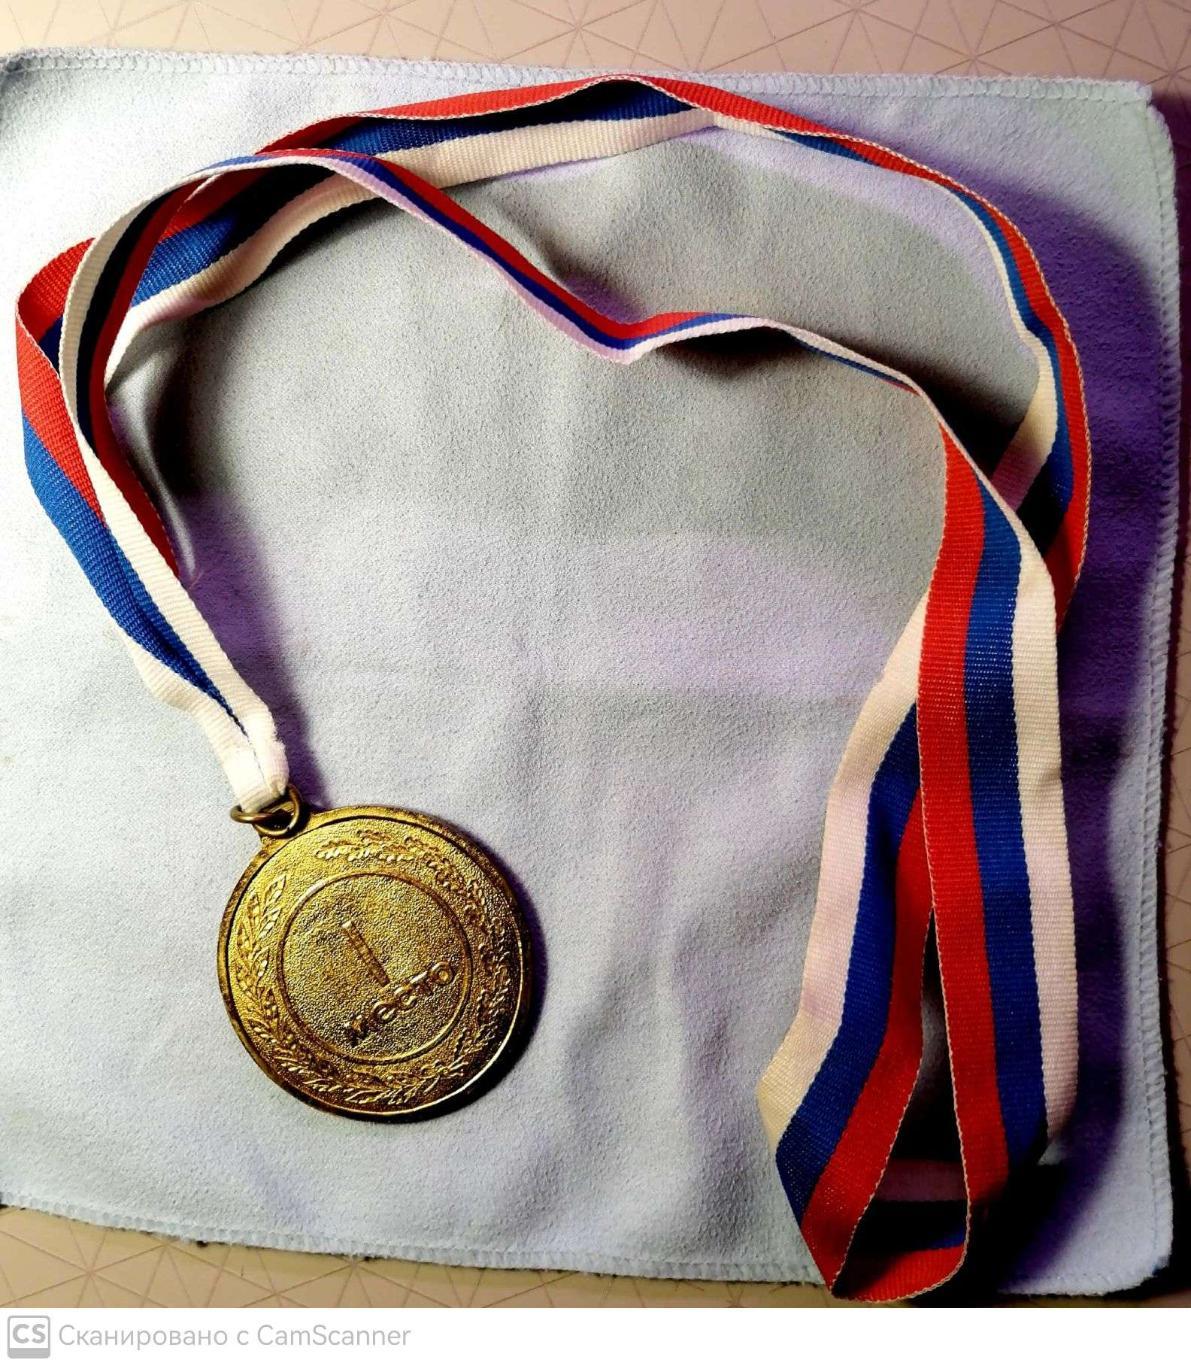 Медаль победителю первенства Санкт-Петербурга по футболу 1